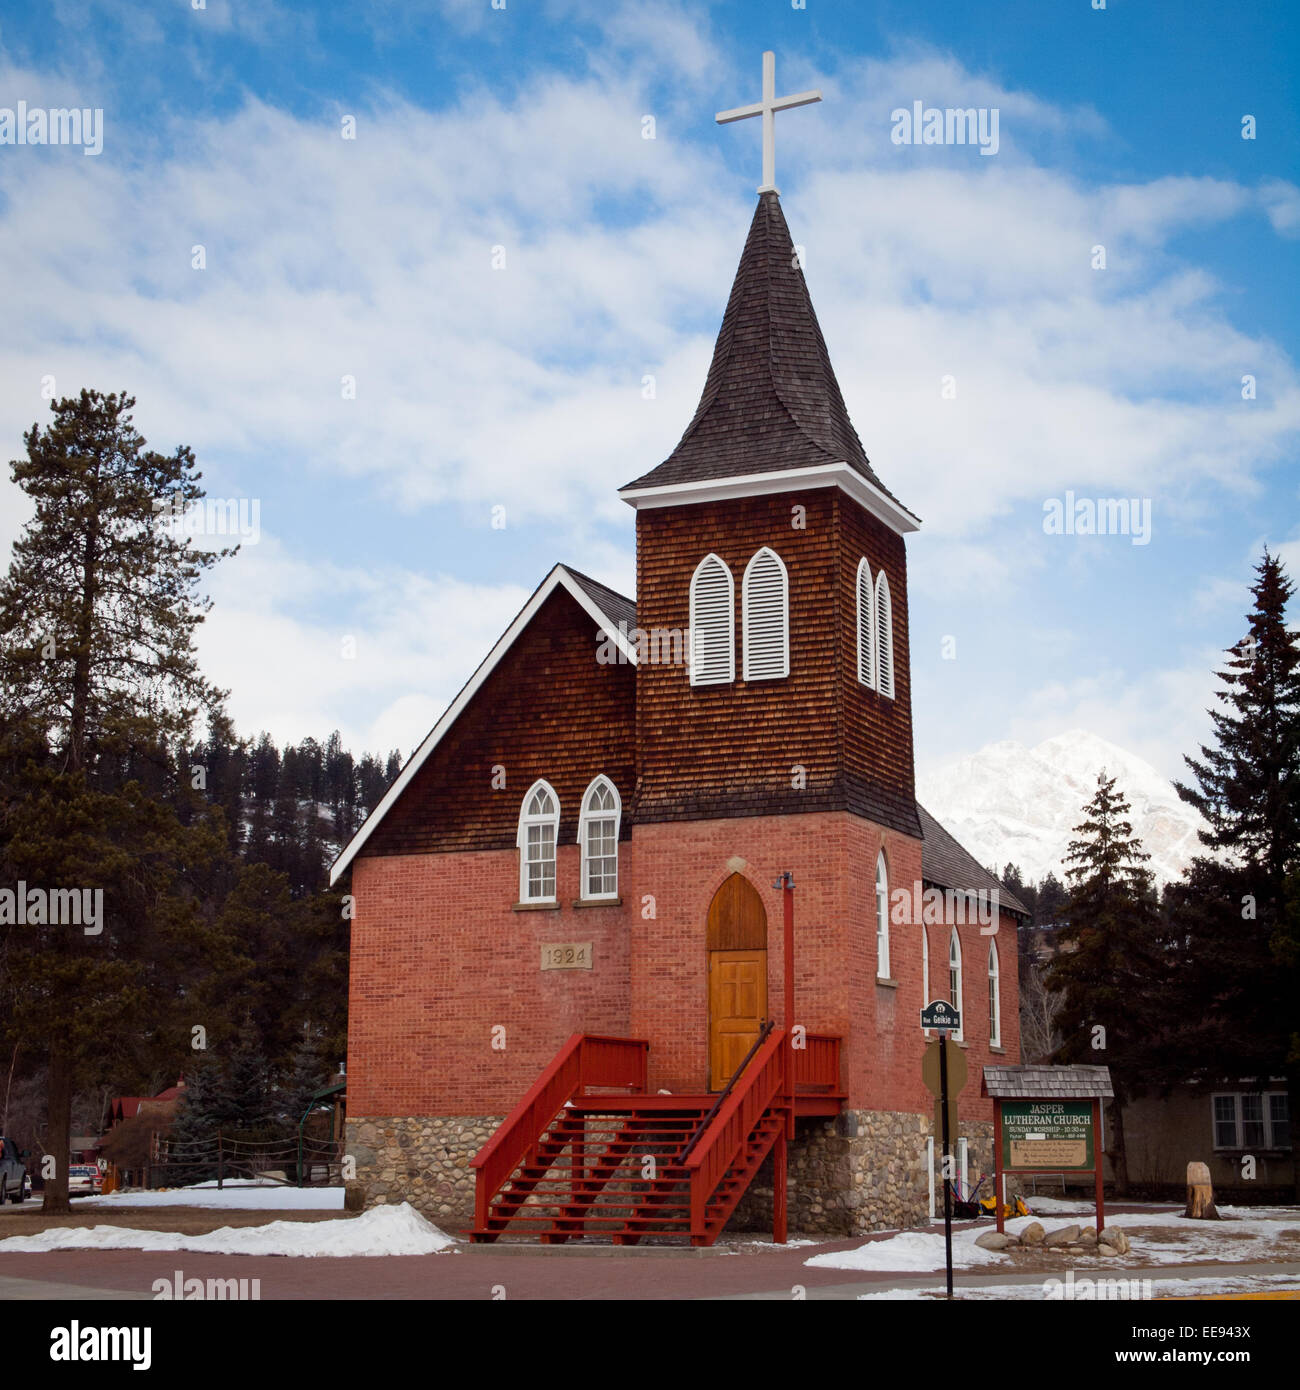 Una vista de la linda, pequeña Iglesia Luterana en Jasper Jasper, Parque Nacional Jasper, Canadá. Foto de stock